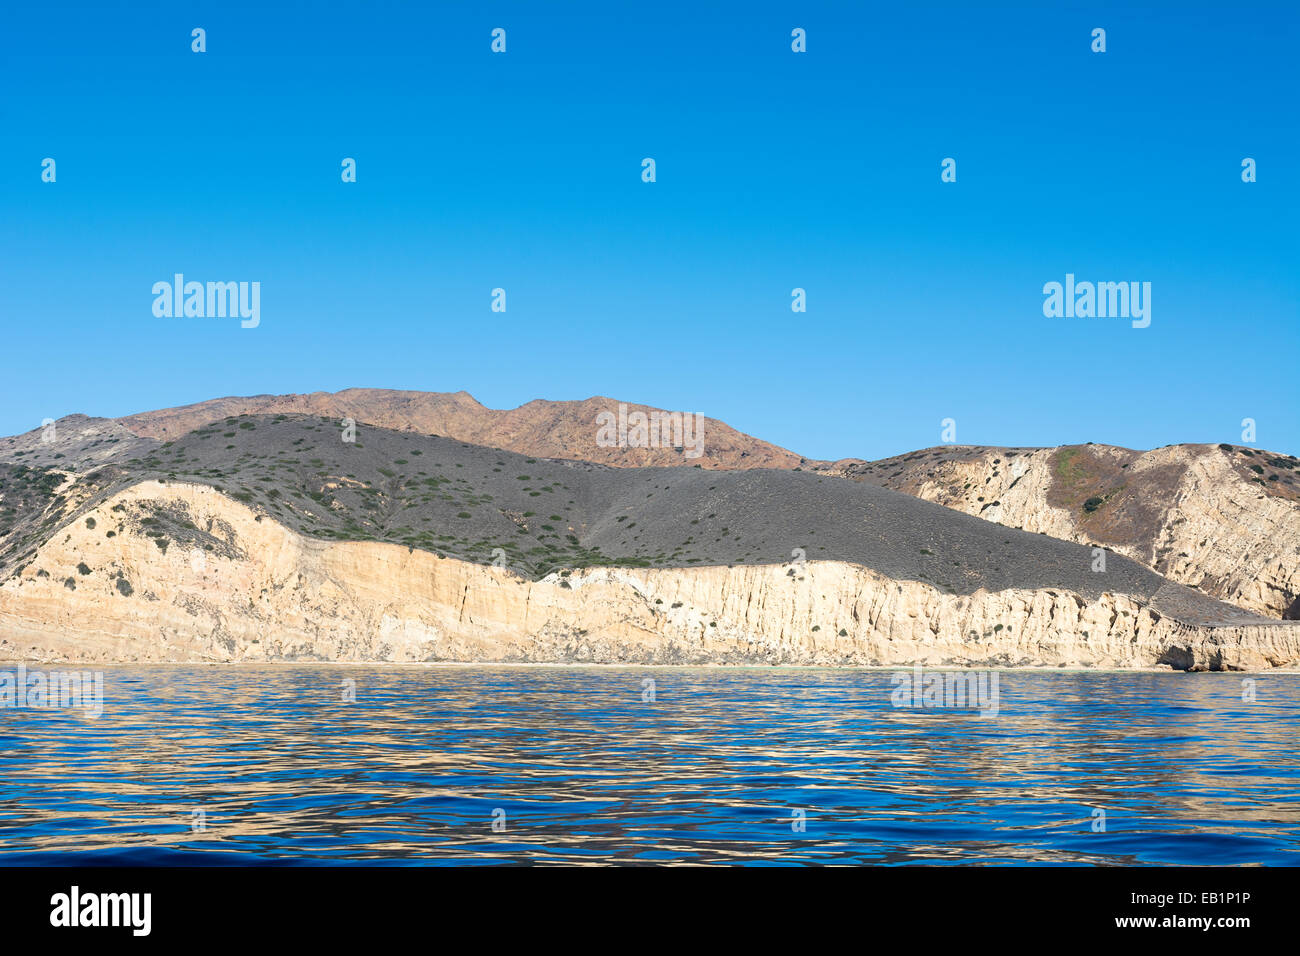 Una remota isla en las Islas del Canal de California muestra la geología de la accidentada orografía diversa, enmarcada contra deep turquesa Foto de stock